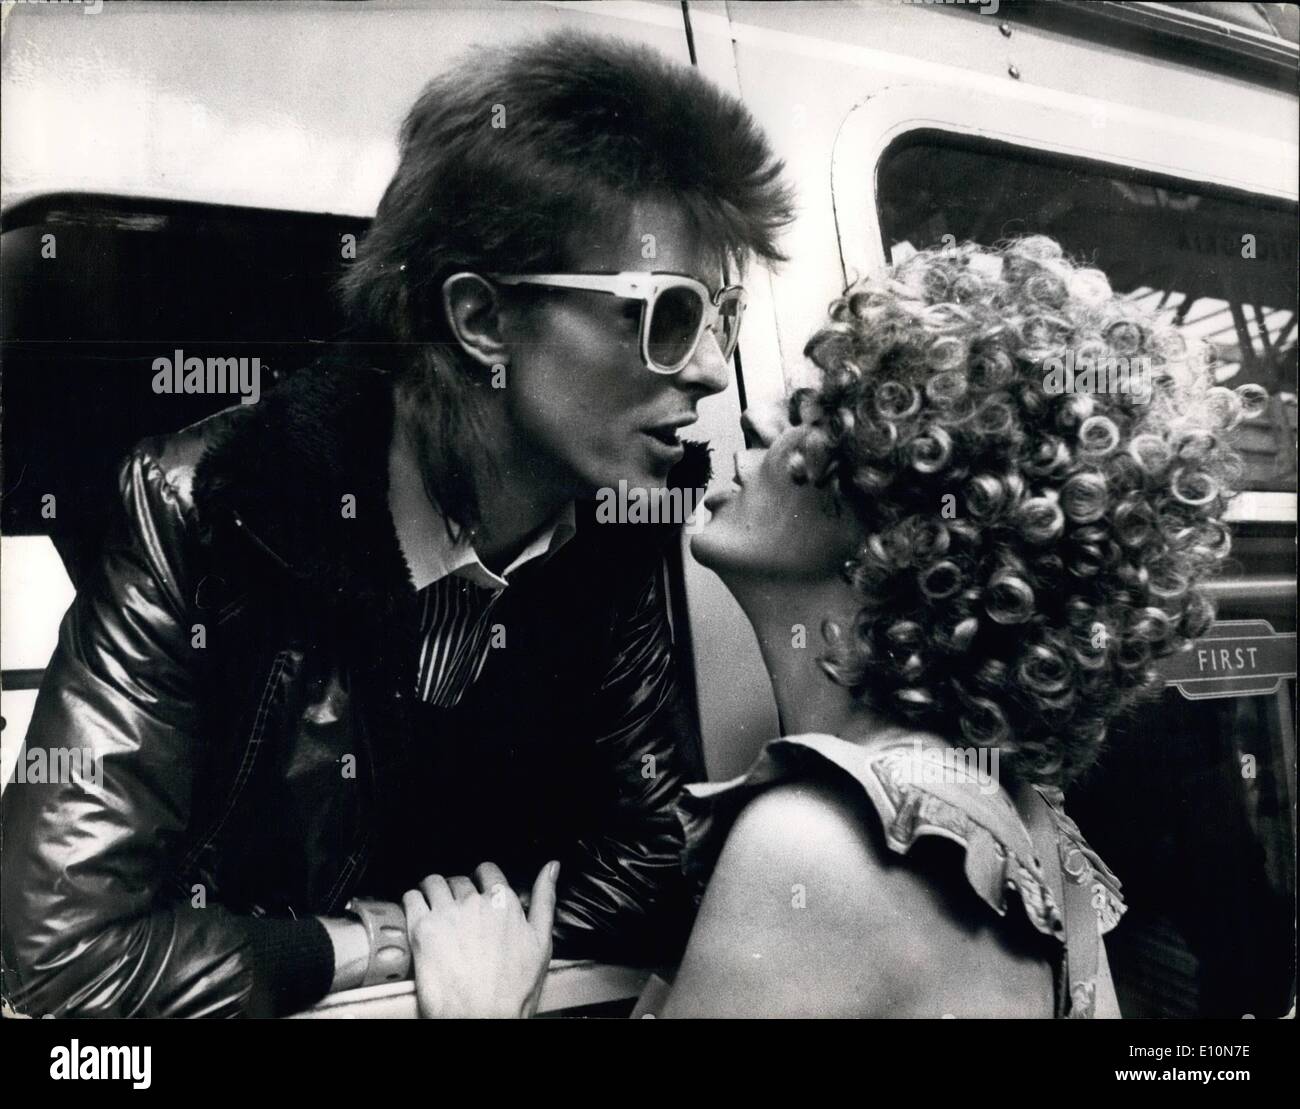 Lug. 07, 1973 - David Bowie Off a Parigi: David Bowie, il pop star che la scorsa settimana a uscire con concerti presso il picco della sua popolarità ha certamente non ha smesso di funzionare. Oggi, solo cinque giorni dopo il suo ultimo concerto che è arrivato al termine di una settimana di sette tour britannico, a sinistra per Parigi per iniziare la registrazione del suo ultimo LP. Egli trascorrere tre settimane la registrazione presso il castello studios appena fuori Parigi e poi si sposterà a Roma per completare la Lp a La RCA studios ci. Mostra fotografica di David Bowie baci di sua moglie Angela quando vide fuori lui a Victoria Station e oggi. Foto Stock